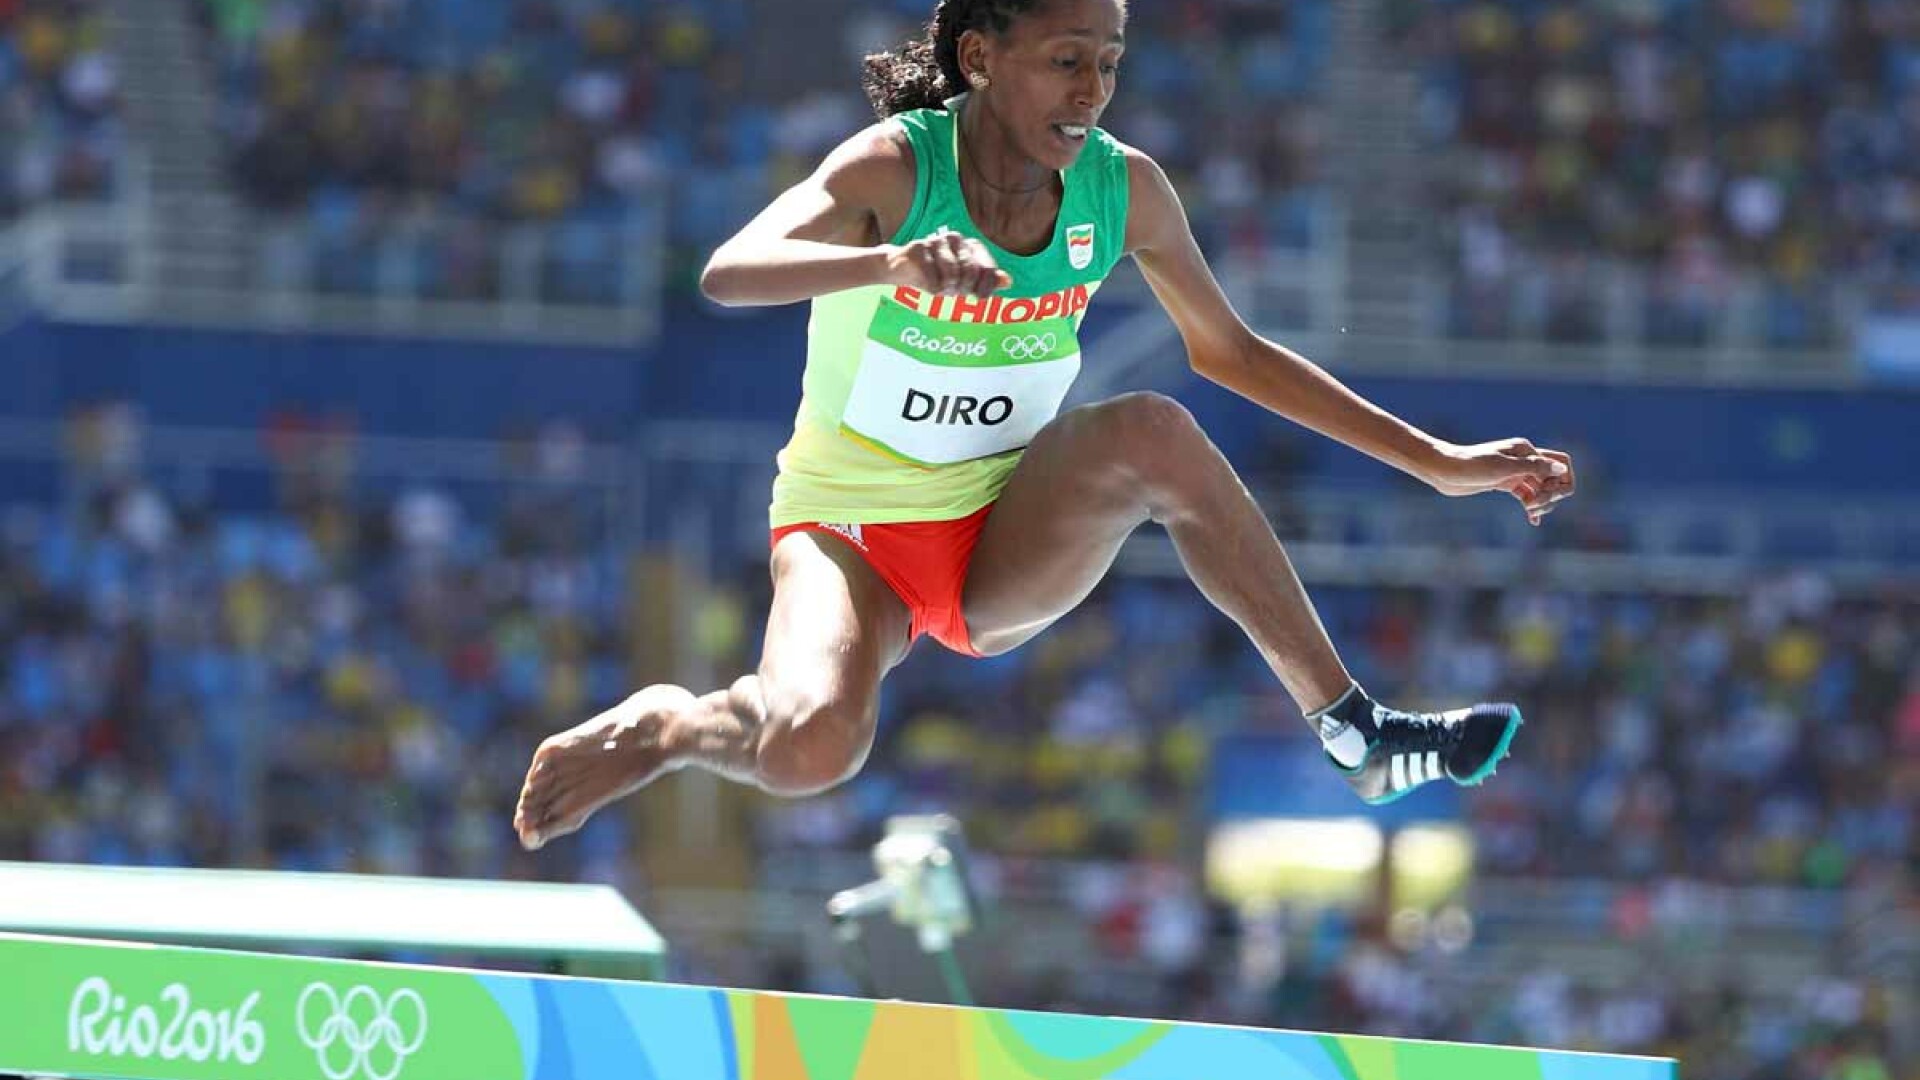 Atleta etiopiana Etenesh Diro s-a clasat pe locul 7 in finala probei de 3.000 m obstacole, dupa ce a alergat ultimii aproape 1.000 de metri fara pantoful drept, fiind descaltata de o adversara in timpul cursei.